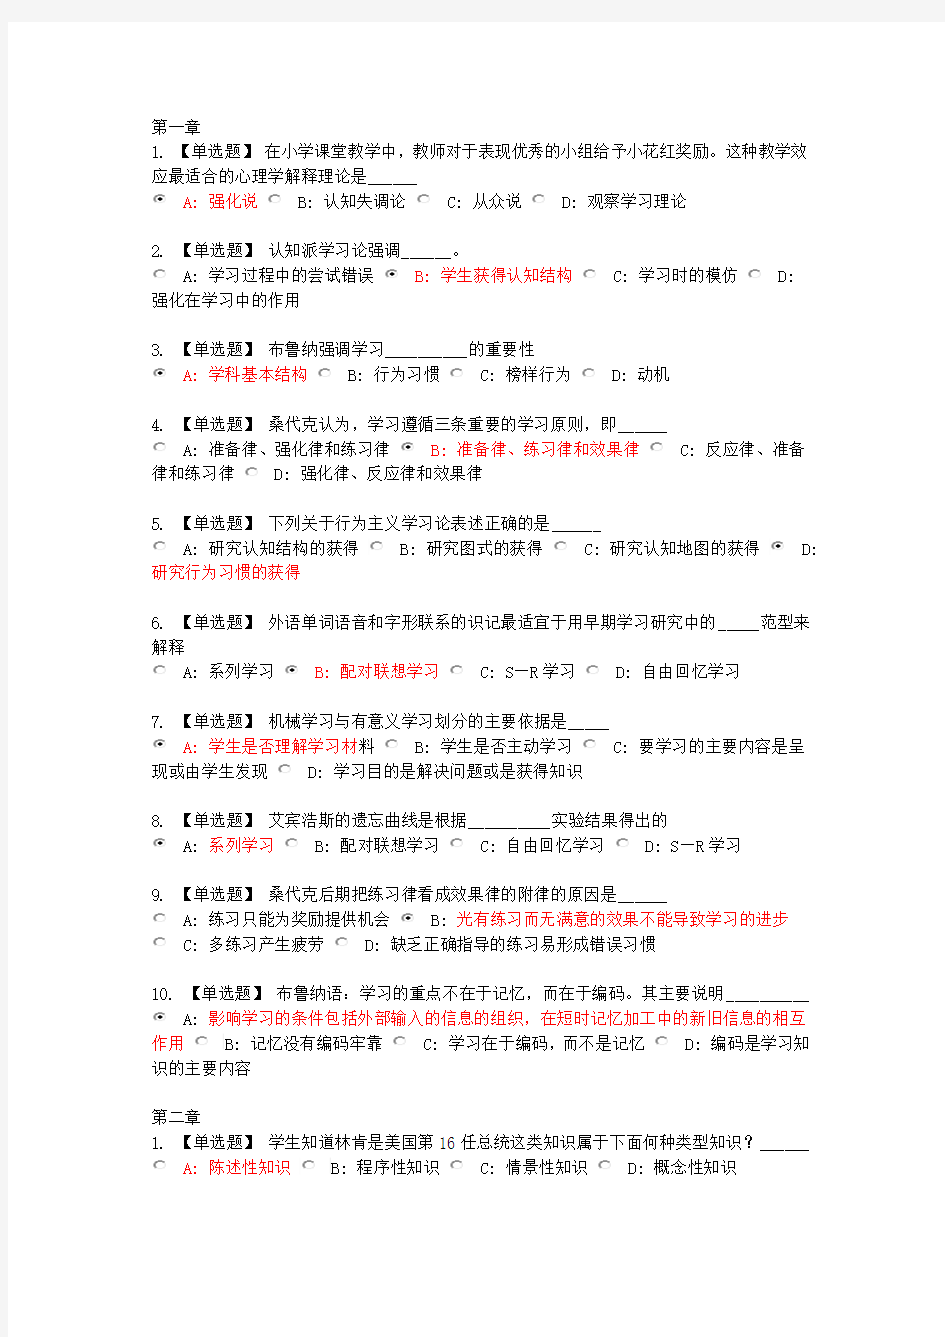 李晓东教育心理学题库-完整版(第一章至第十三章)教程文件